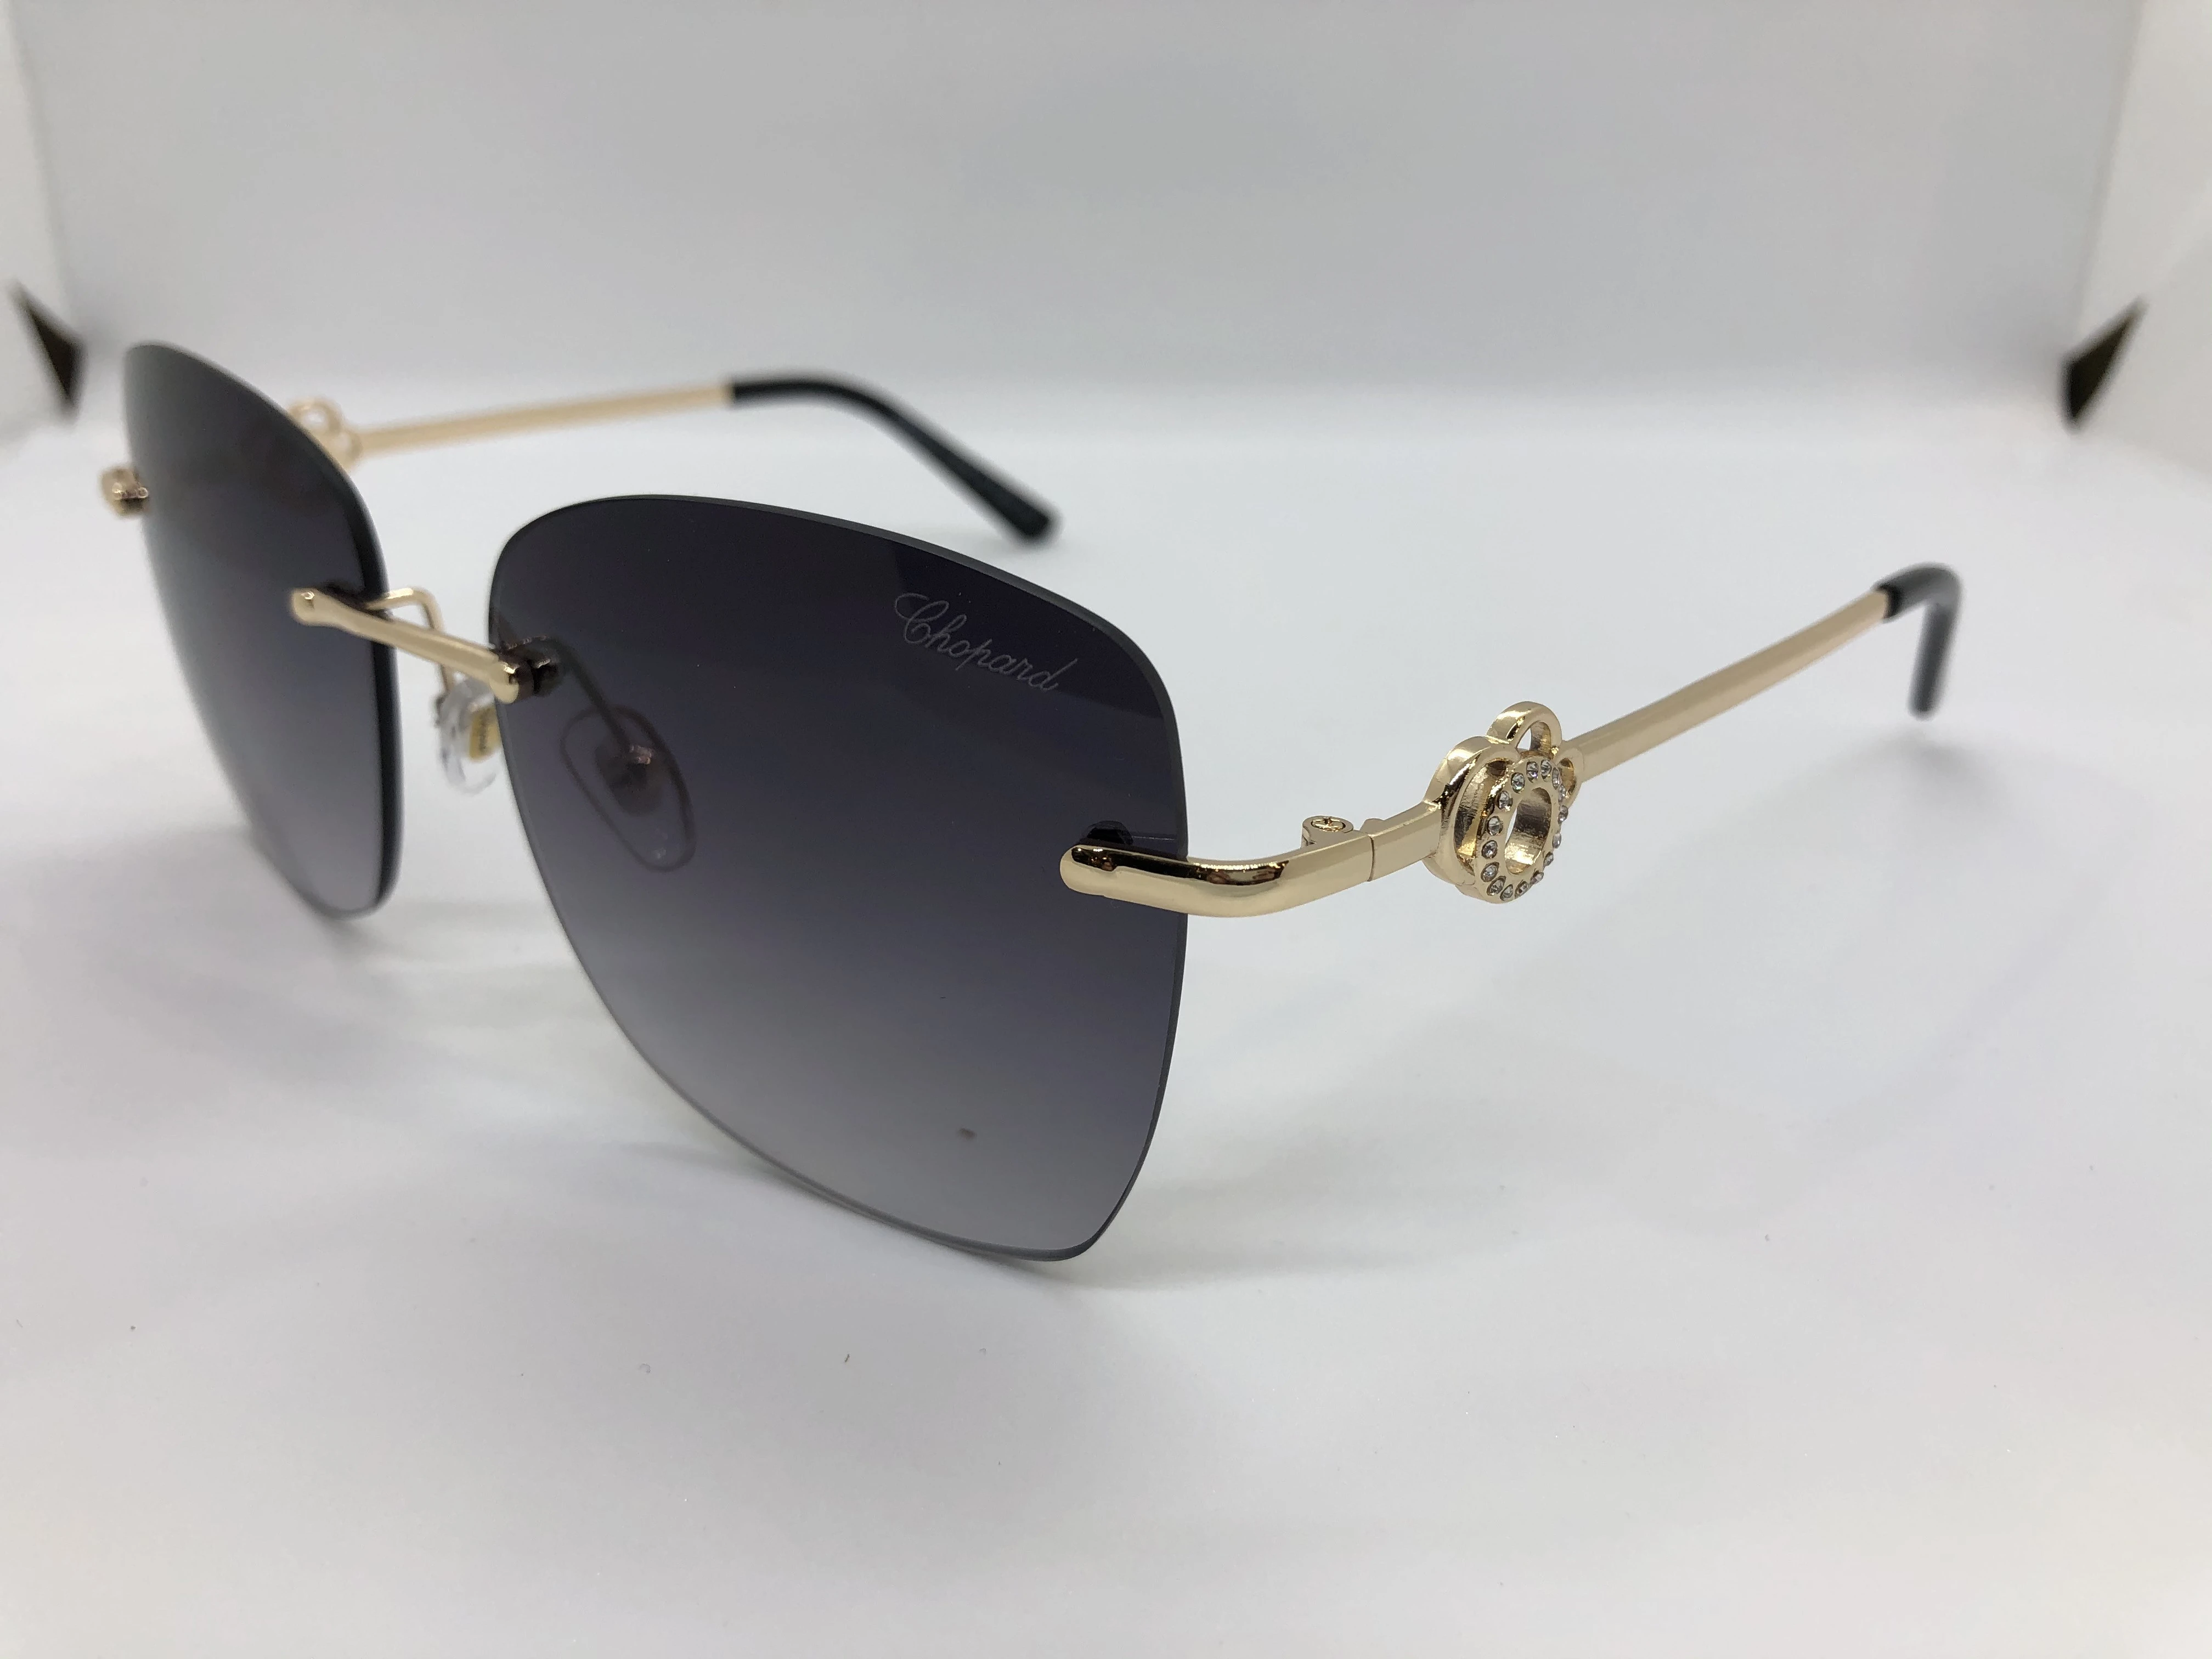 نظارة شمسية شوبارد - بدون اطار - وعدسات سوداء متدرجة - وزراع ذهبي معدن - حريمي